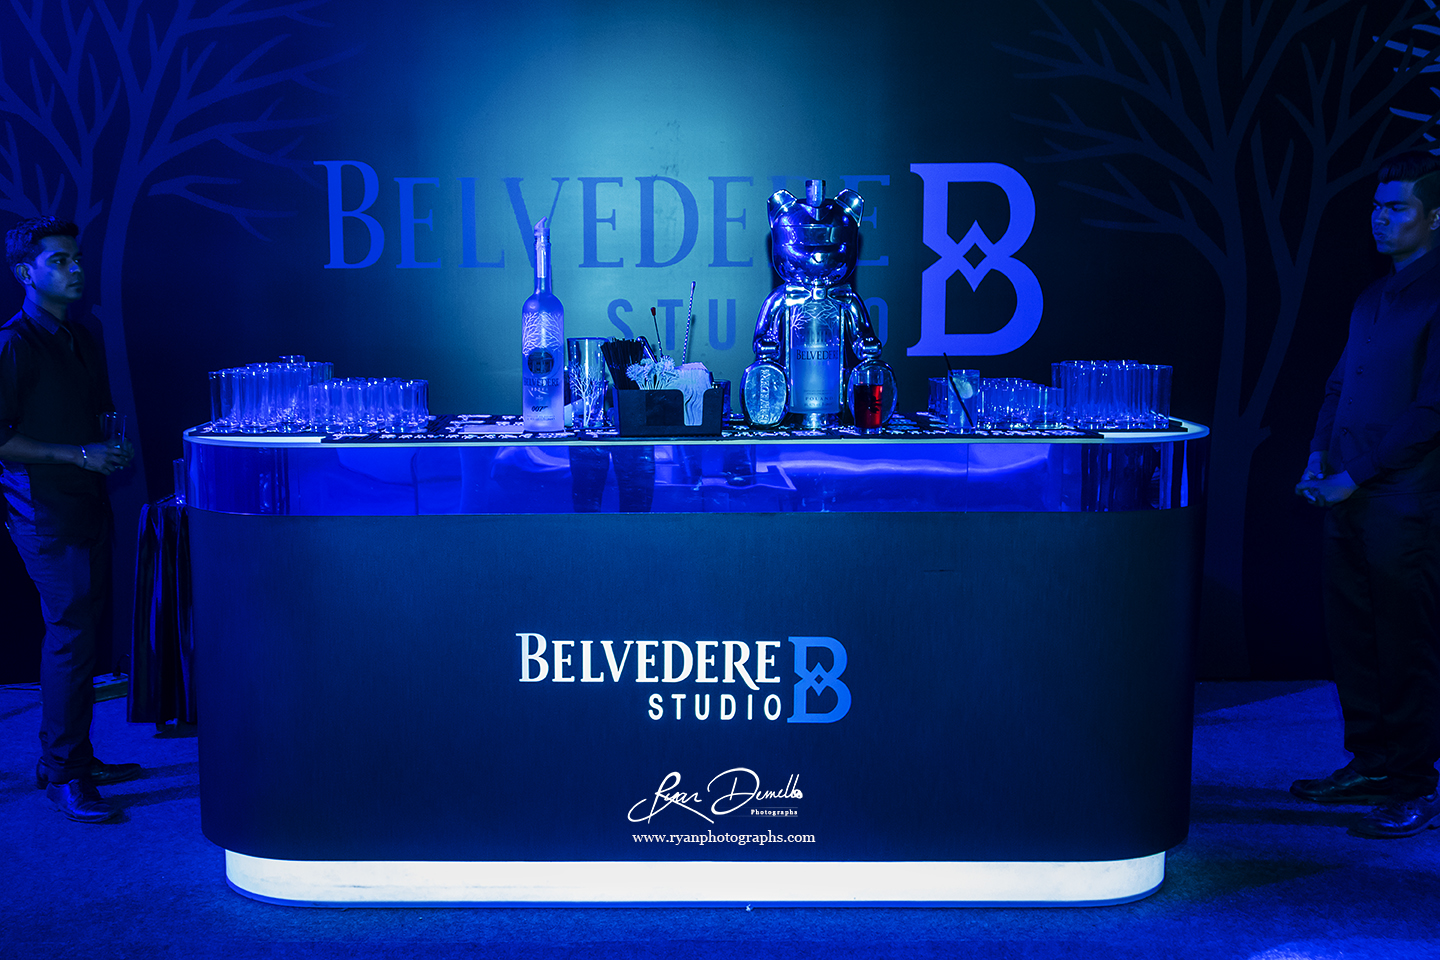 Belvedere Studio B Launch Party ​​​​​​​